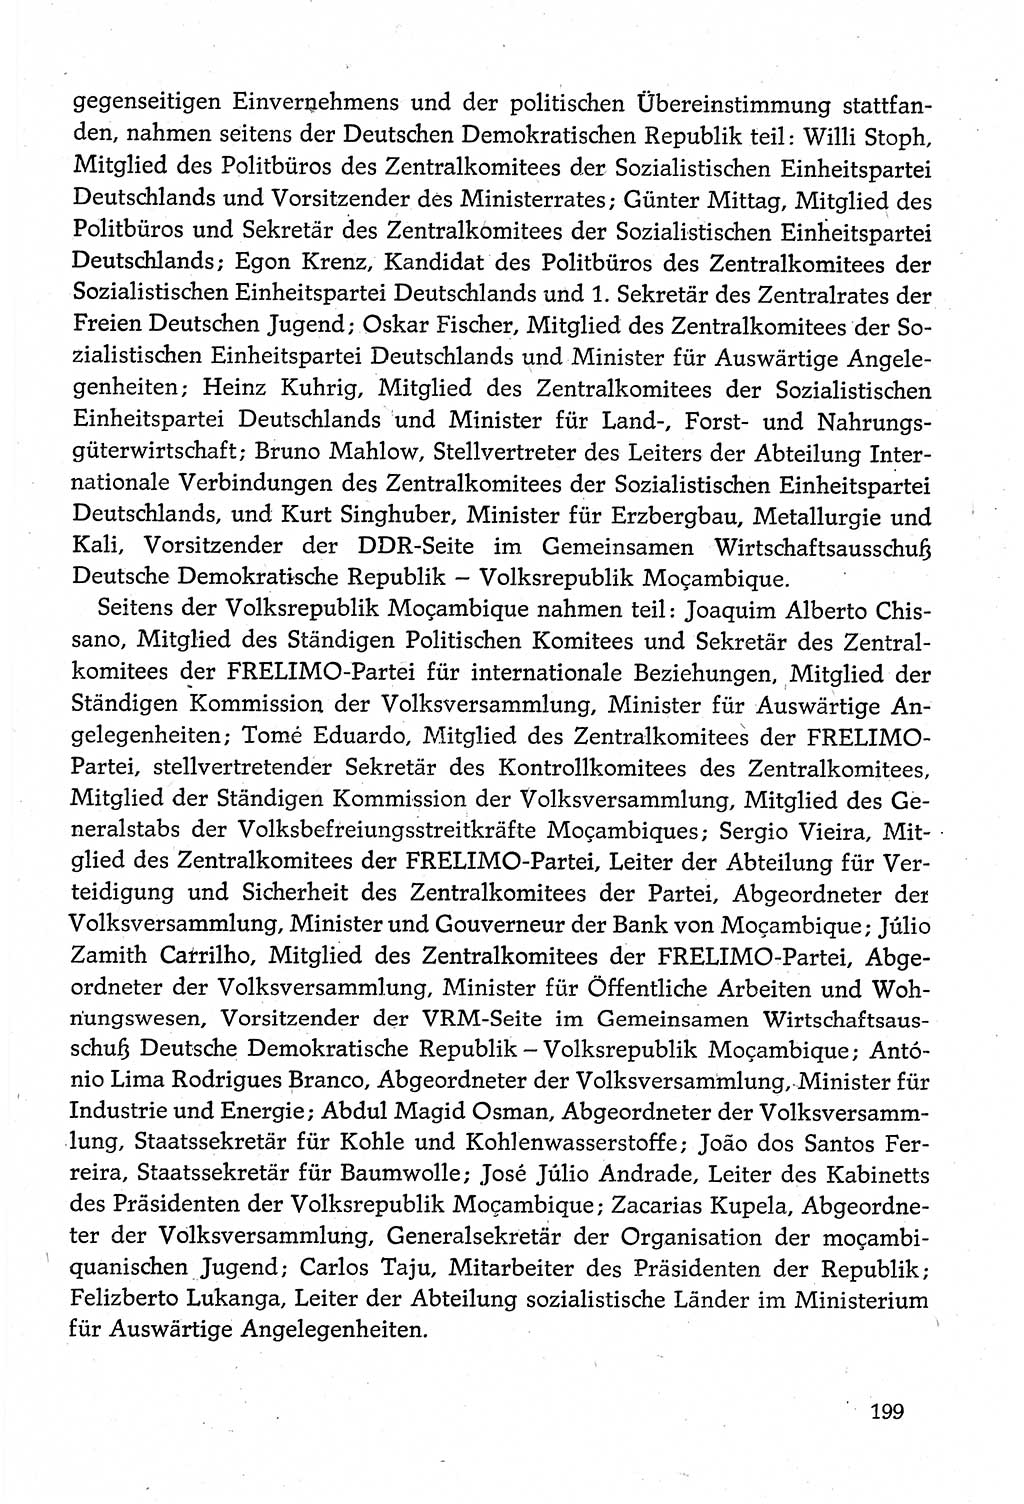 Dokumente der Sozialistischen Einheitspartei Deutschlands (SED) [Deutsche Demokratische Republik (DDR)] 1980-1981, Seite 199 (Dok. SED DDR 1980-1981, S. 199)